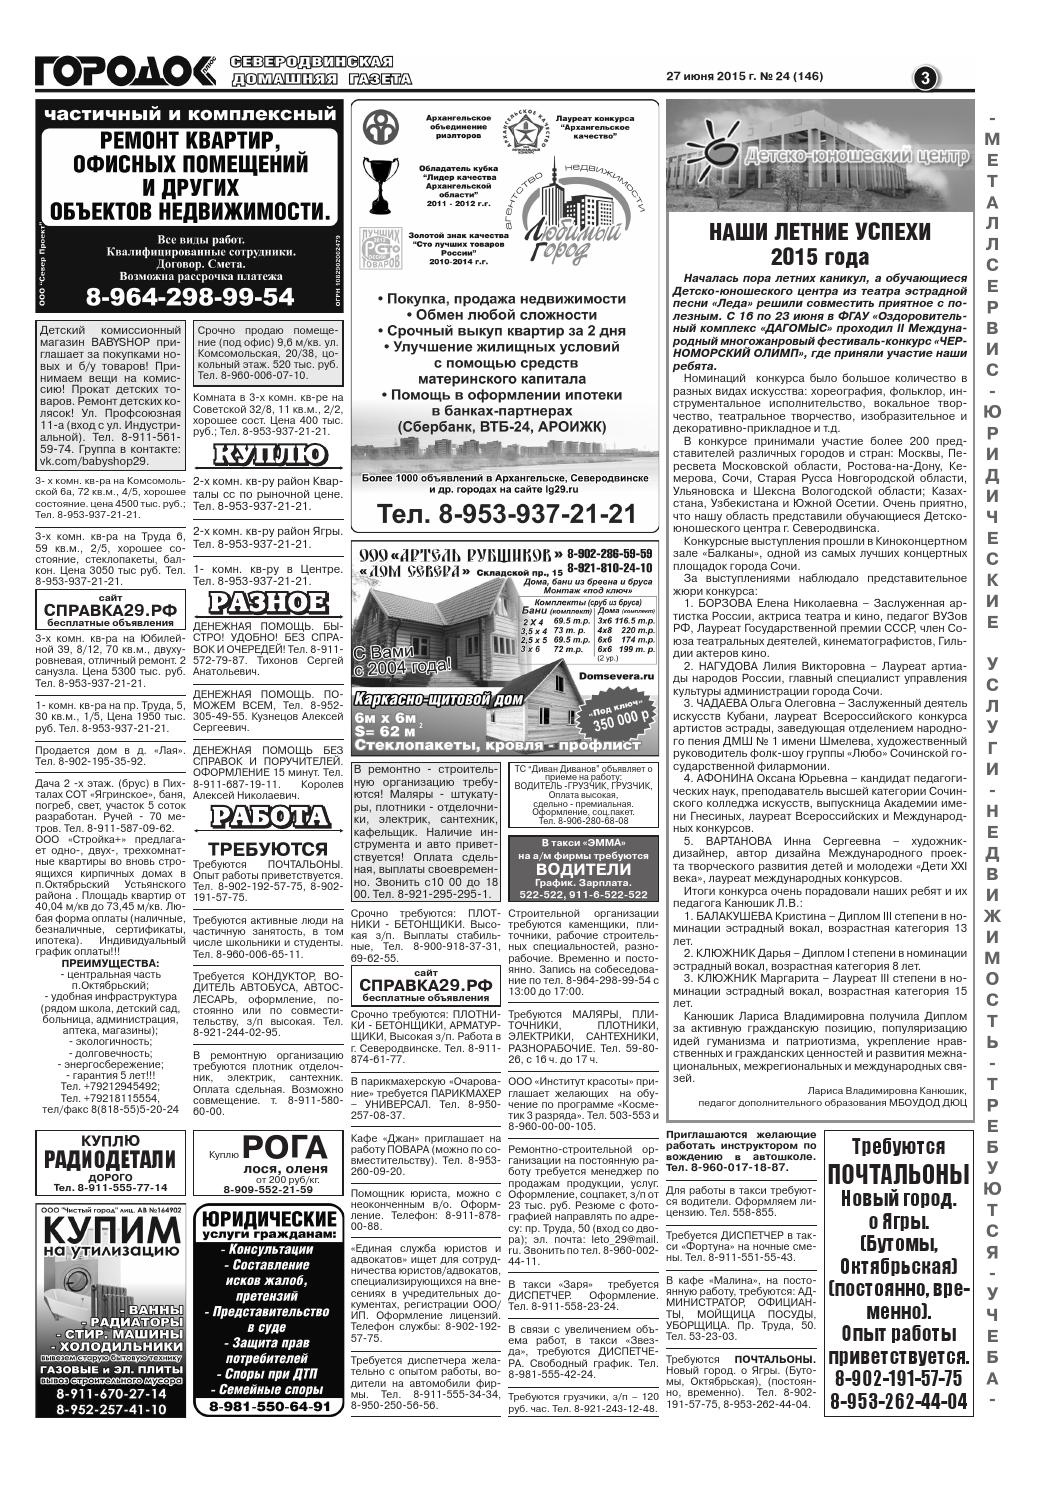 Городок плюс, выпуск номер 24 от 27 июня 2015 года, страница 3.